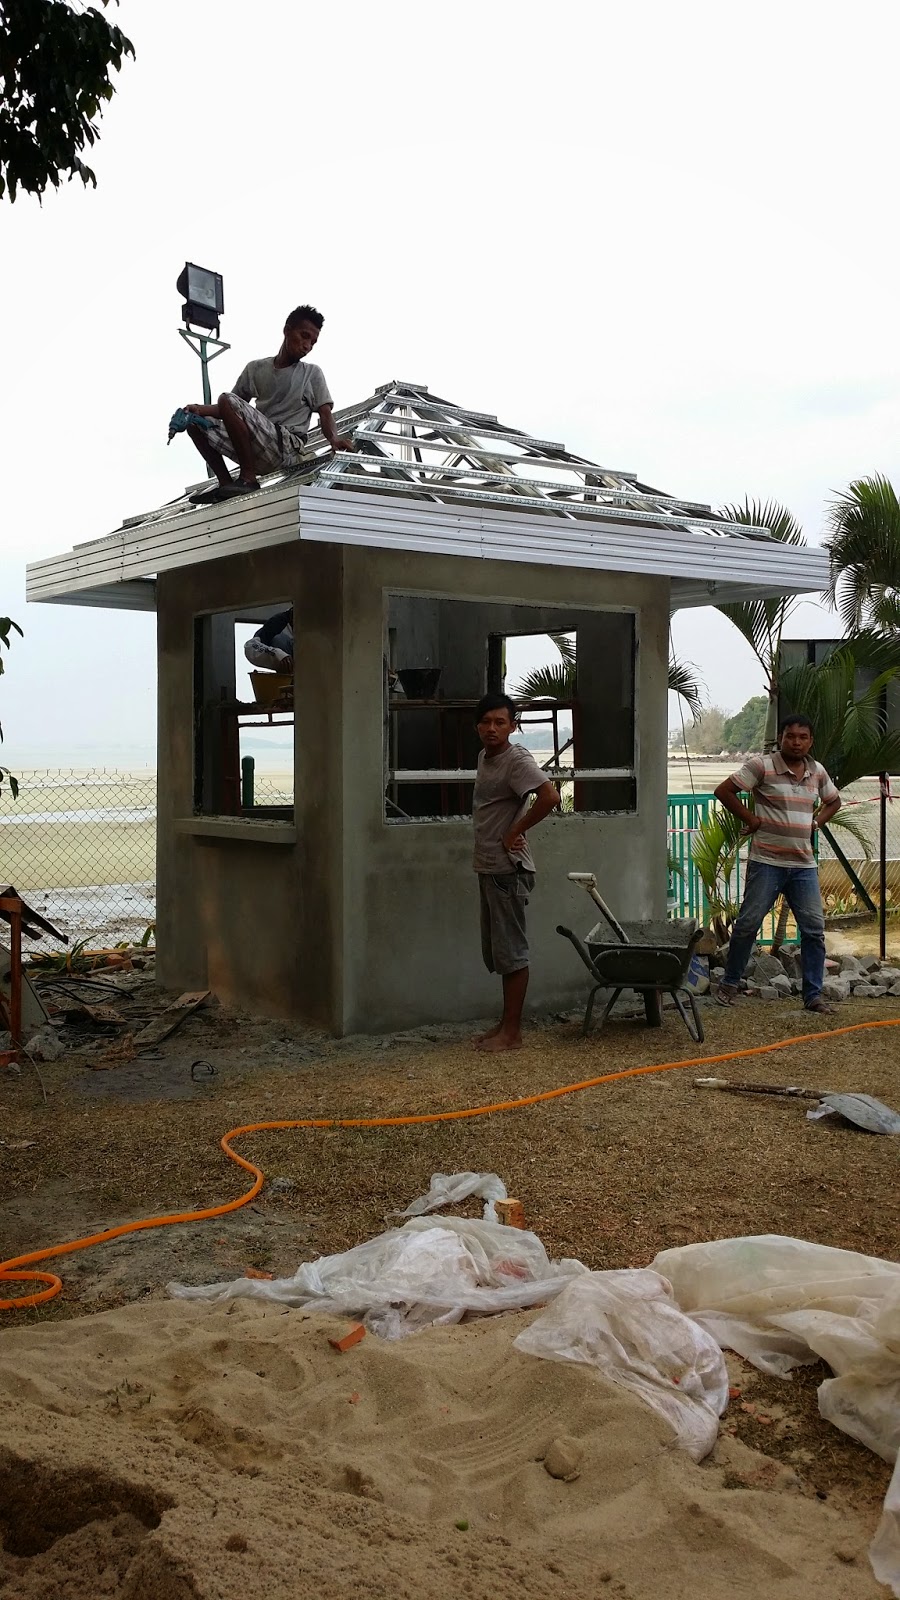 Renovation dan Ubahsuai Rumah Kekuda Besi Rangka Atap 